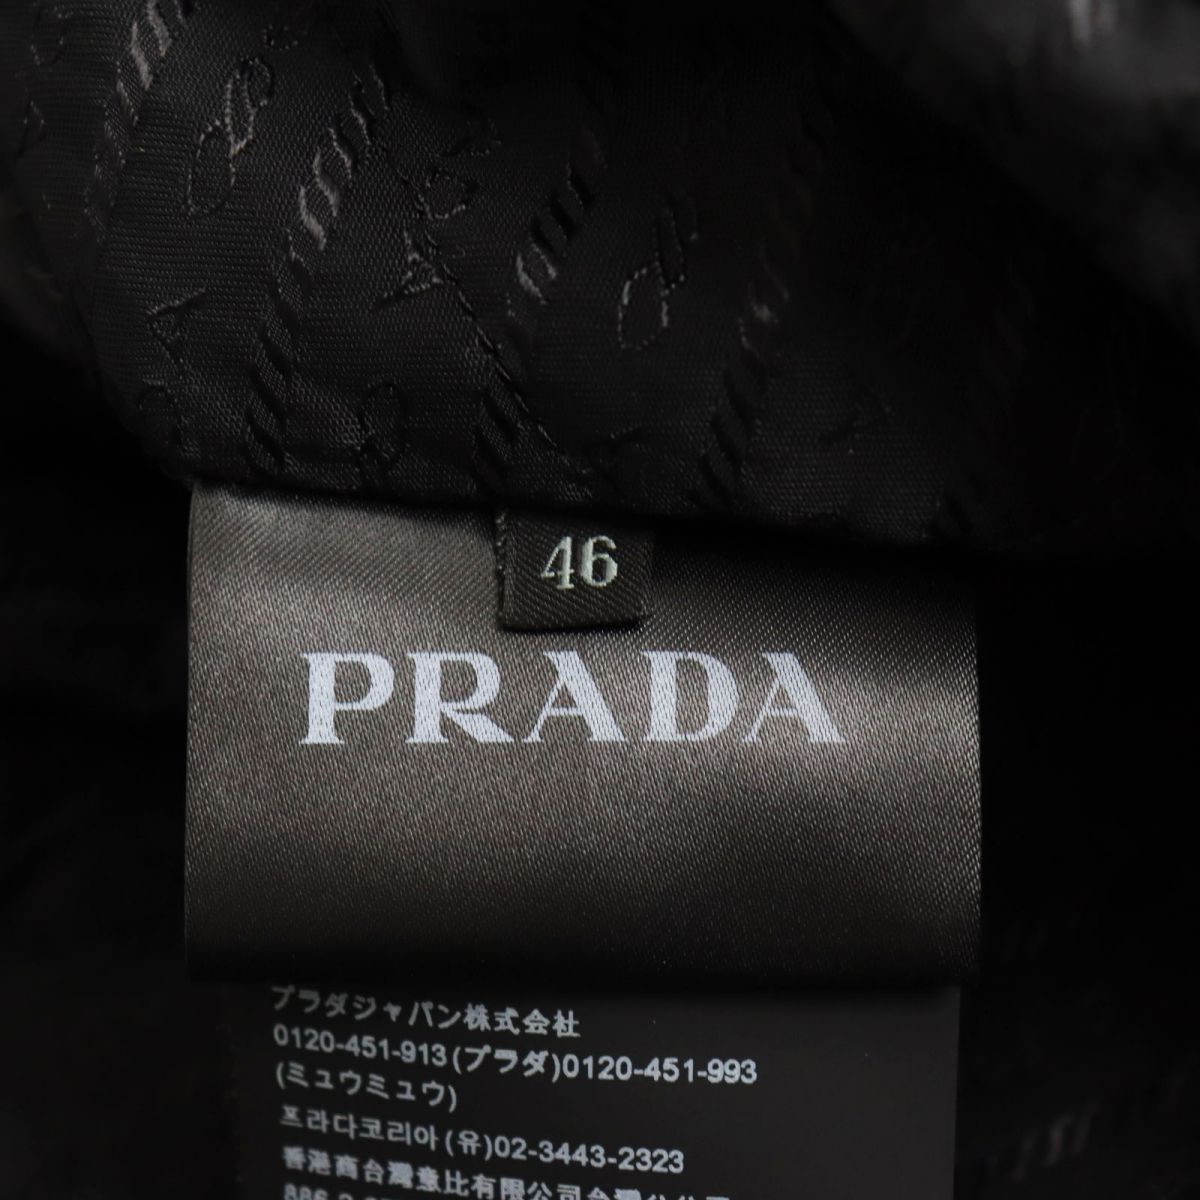 未使用品●2018年製 PRADA プラダ SGN802 ラムレザー使い 襟シープファー ダウンジャケット/ブルゾン ブラック 48 伊製 正規品